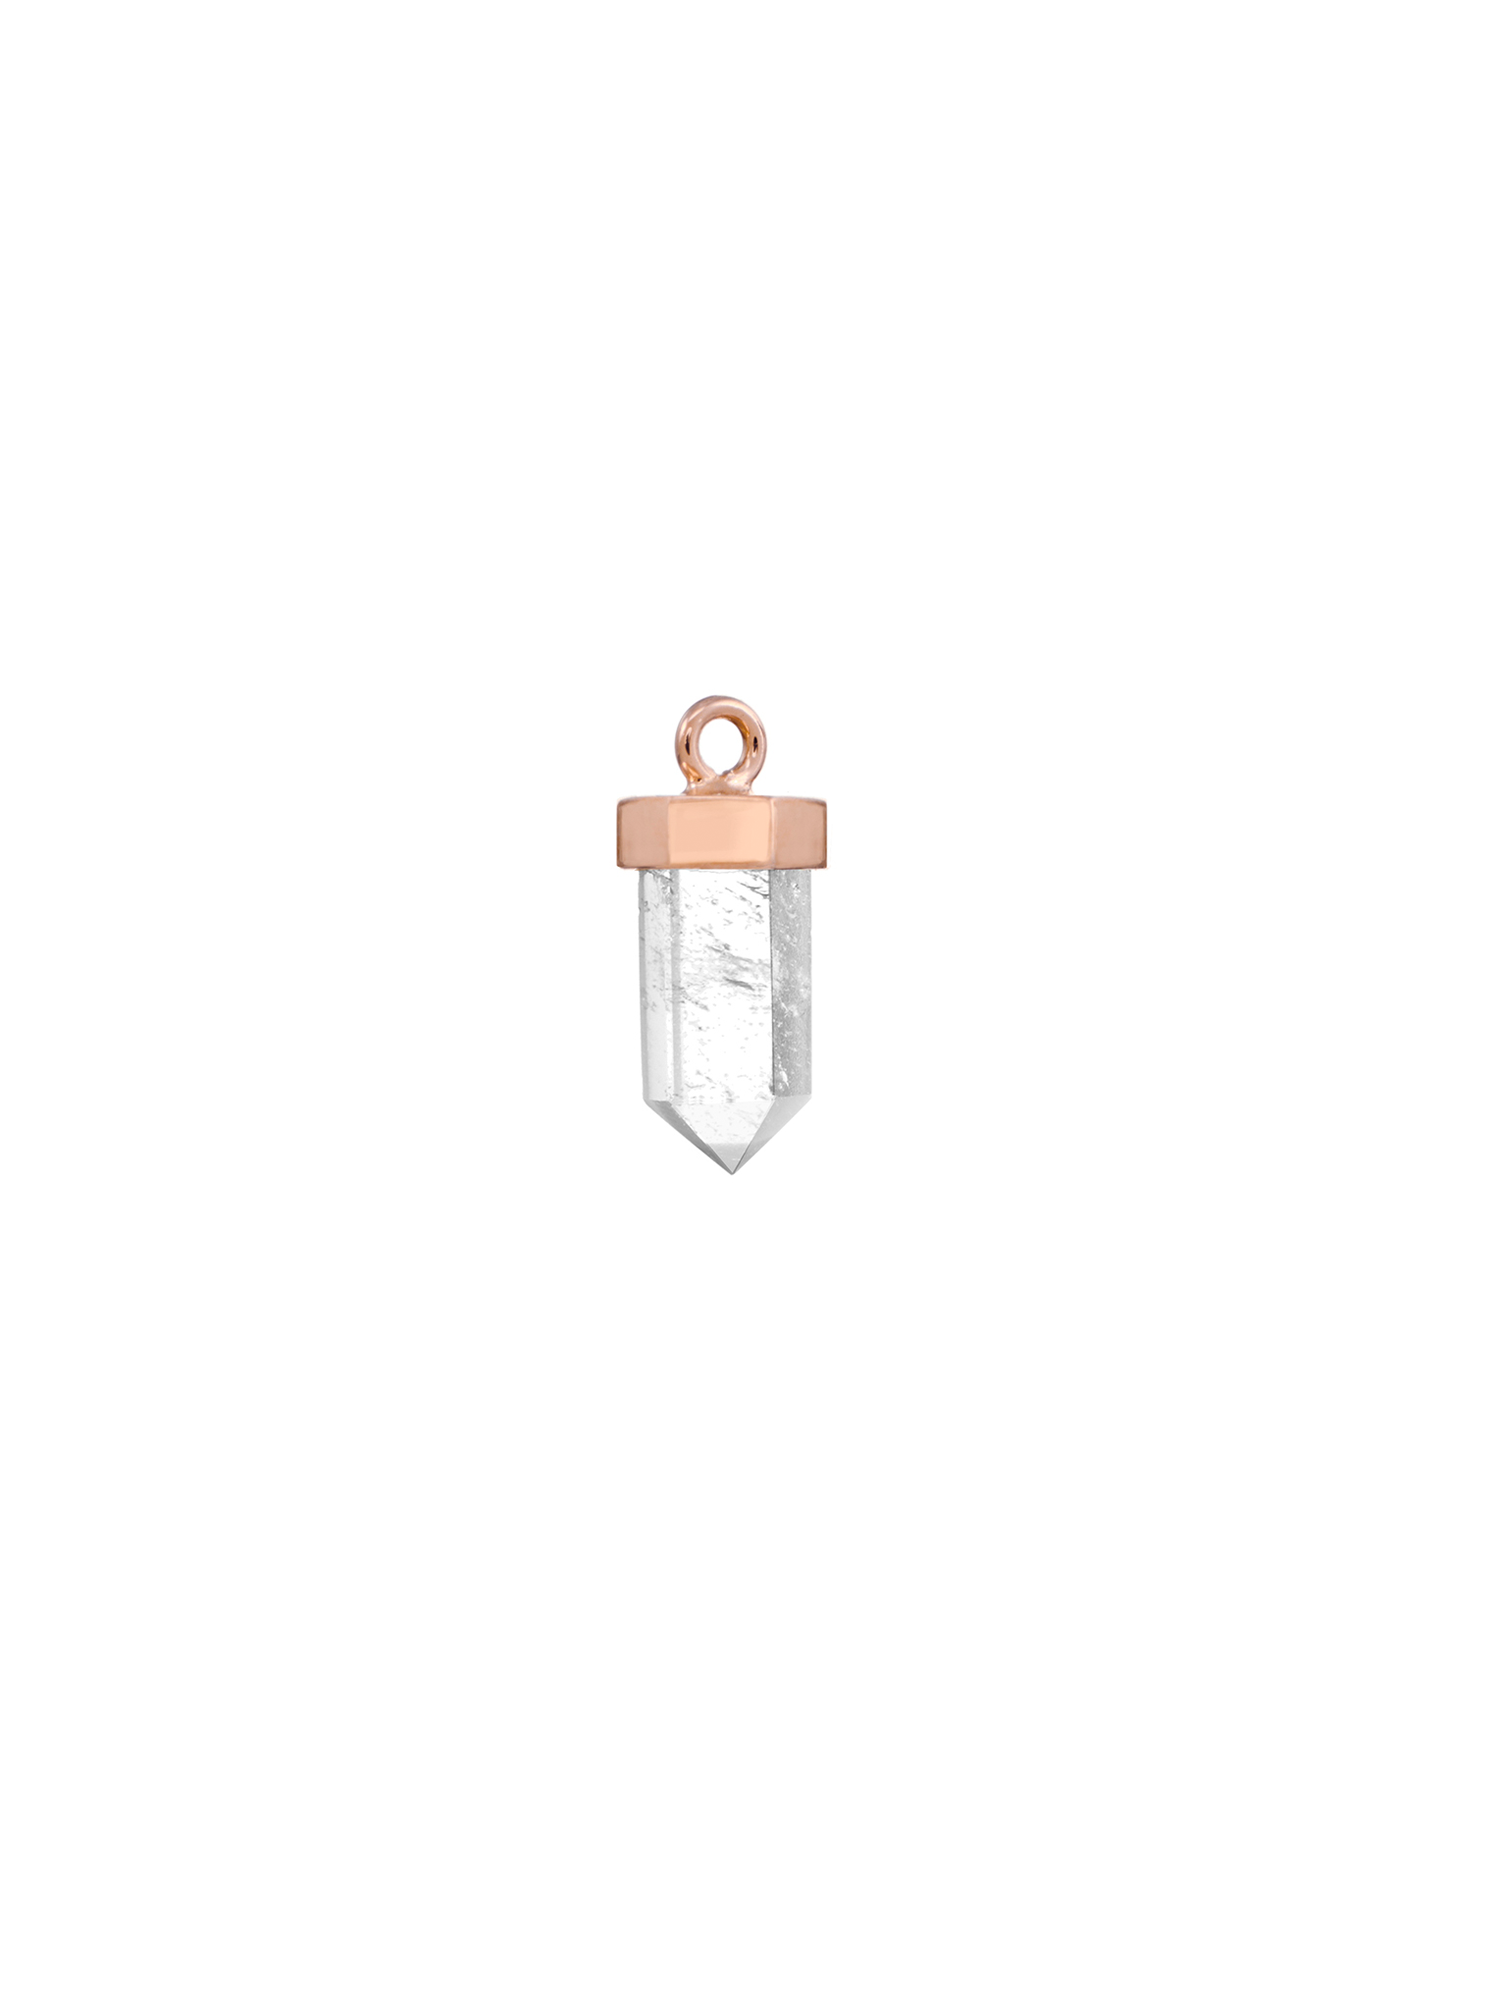 fire flies #1.5 earring charm | clear quartz